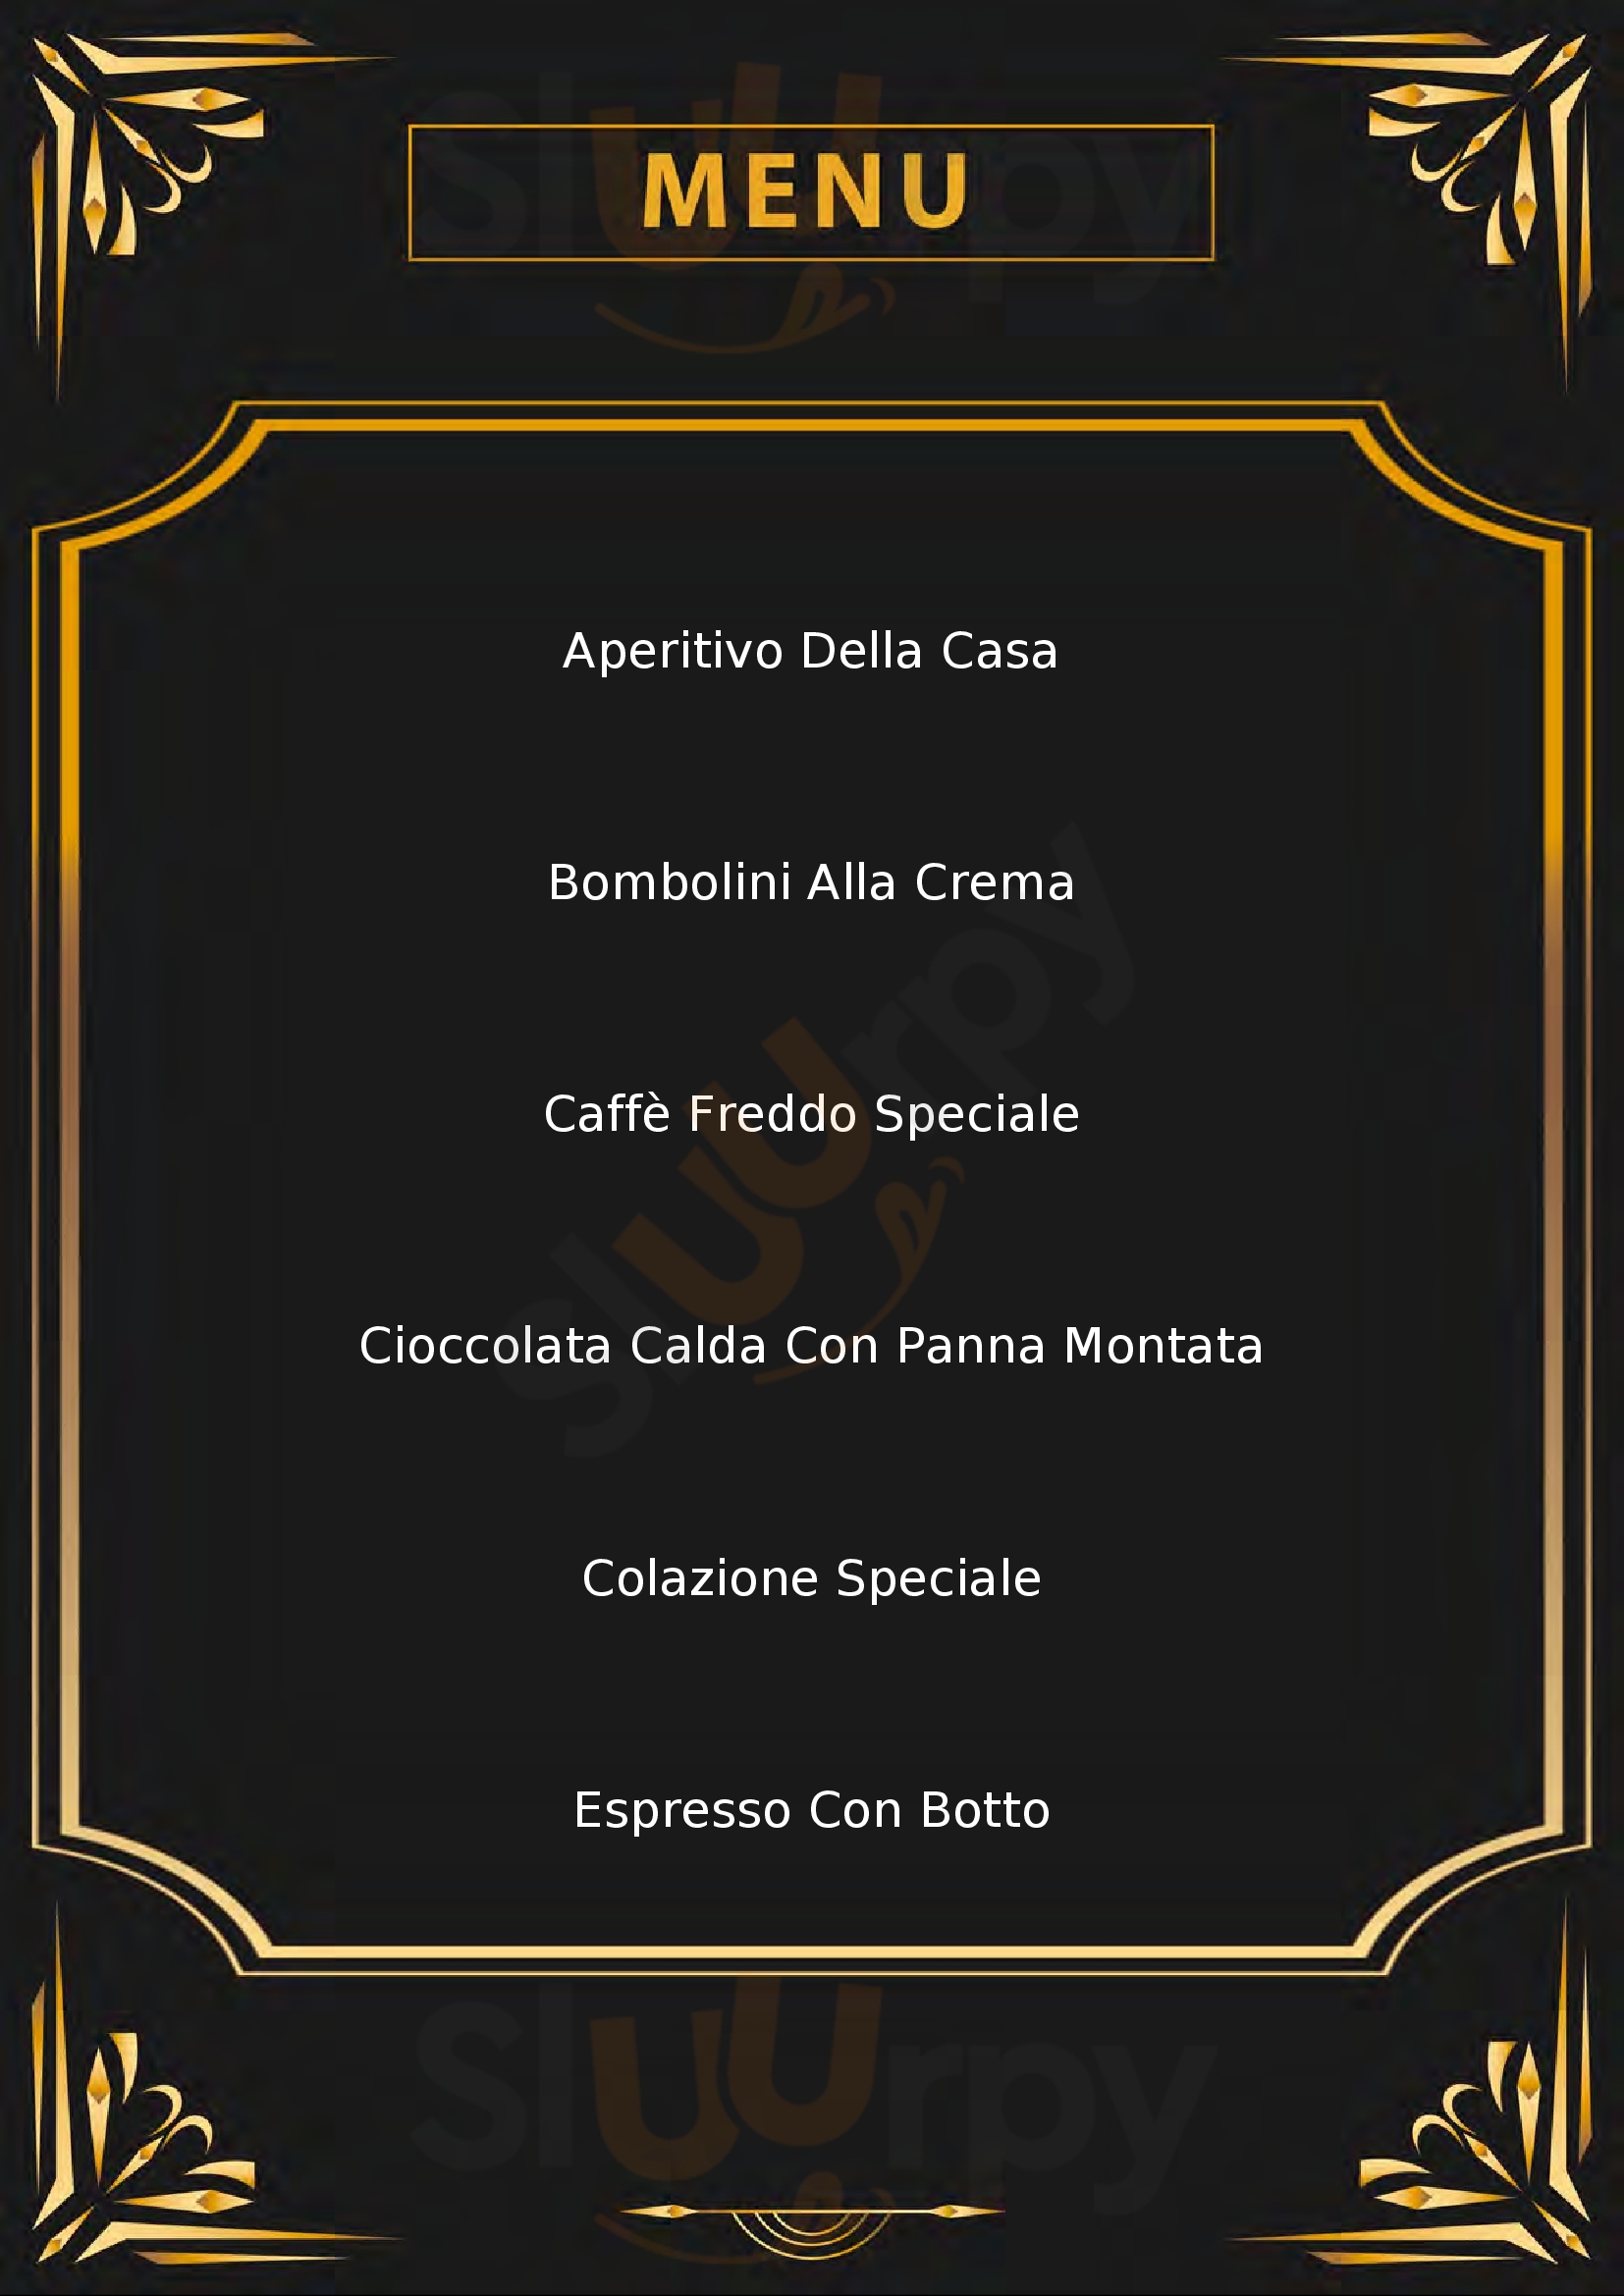 La Bottega del Caffè Dersut Verona menù 1 pagina